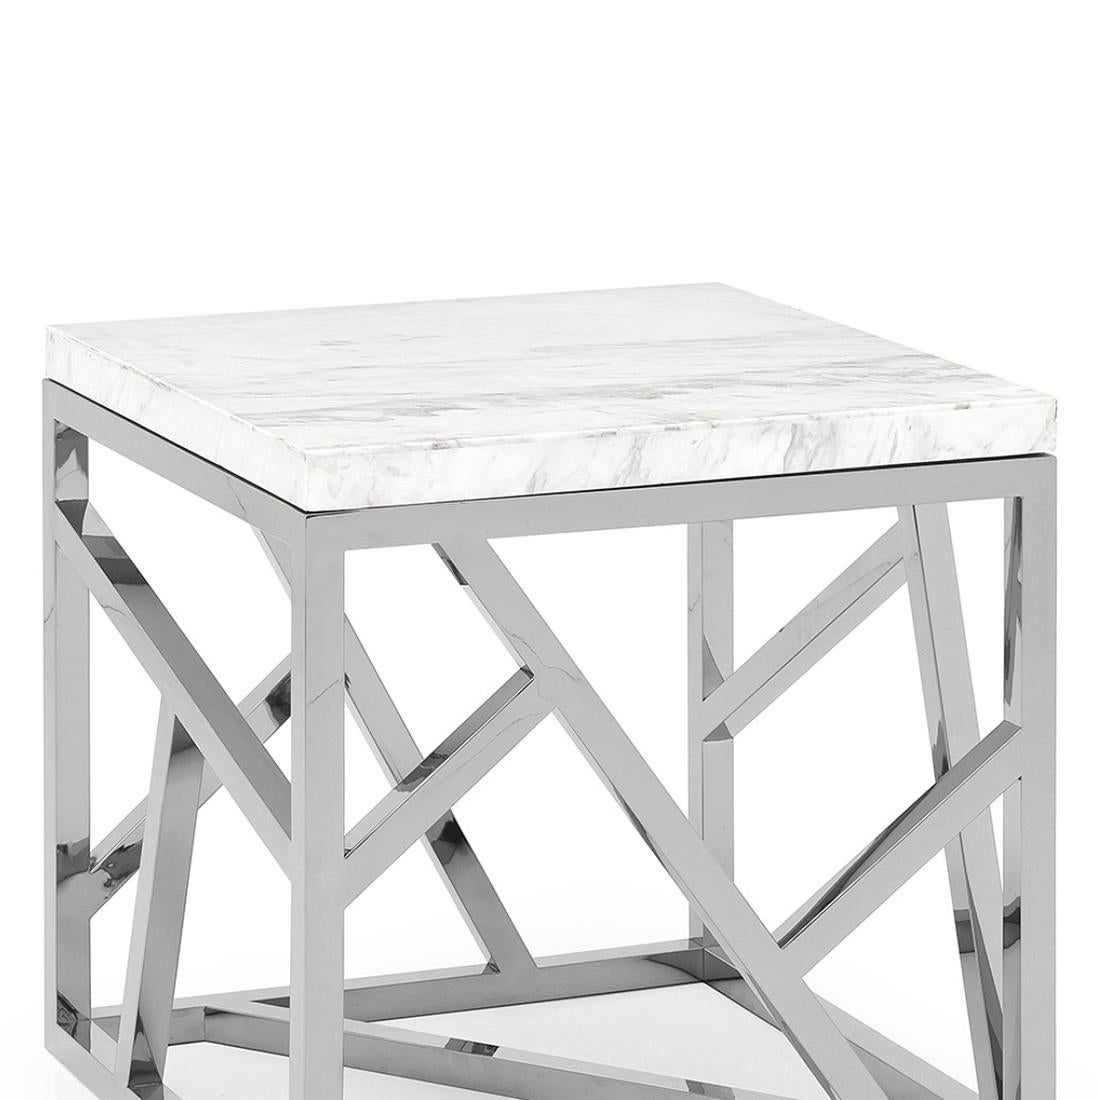 Table d'appoint Raytona chromée avec base en métal
en finition chromée et avec un plateau en marbre blanc.